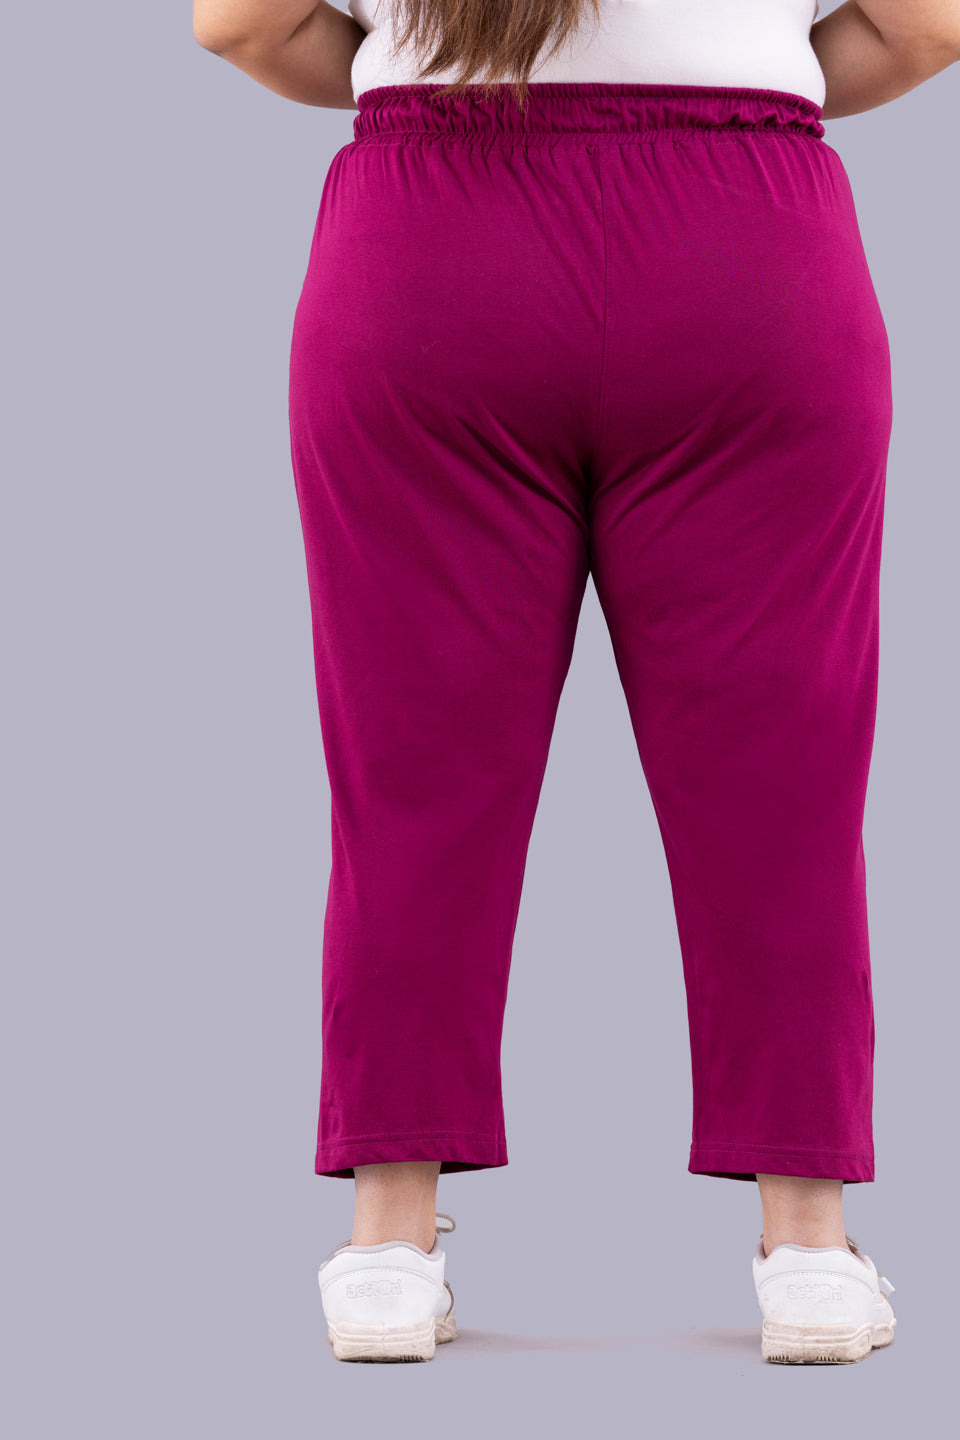 Cotton Capris For Women - Half Capri Pants - Red